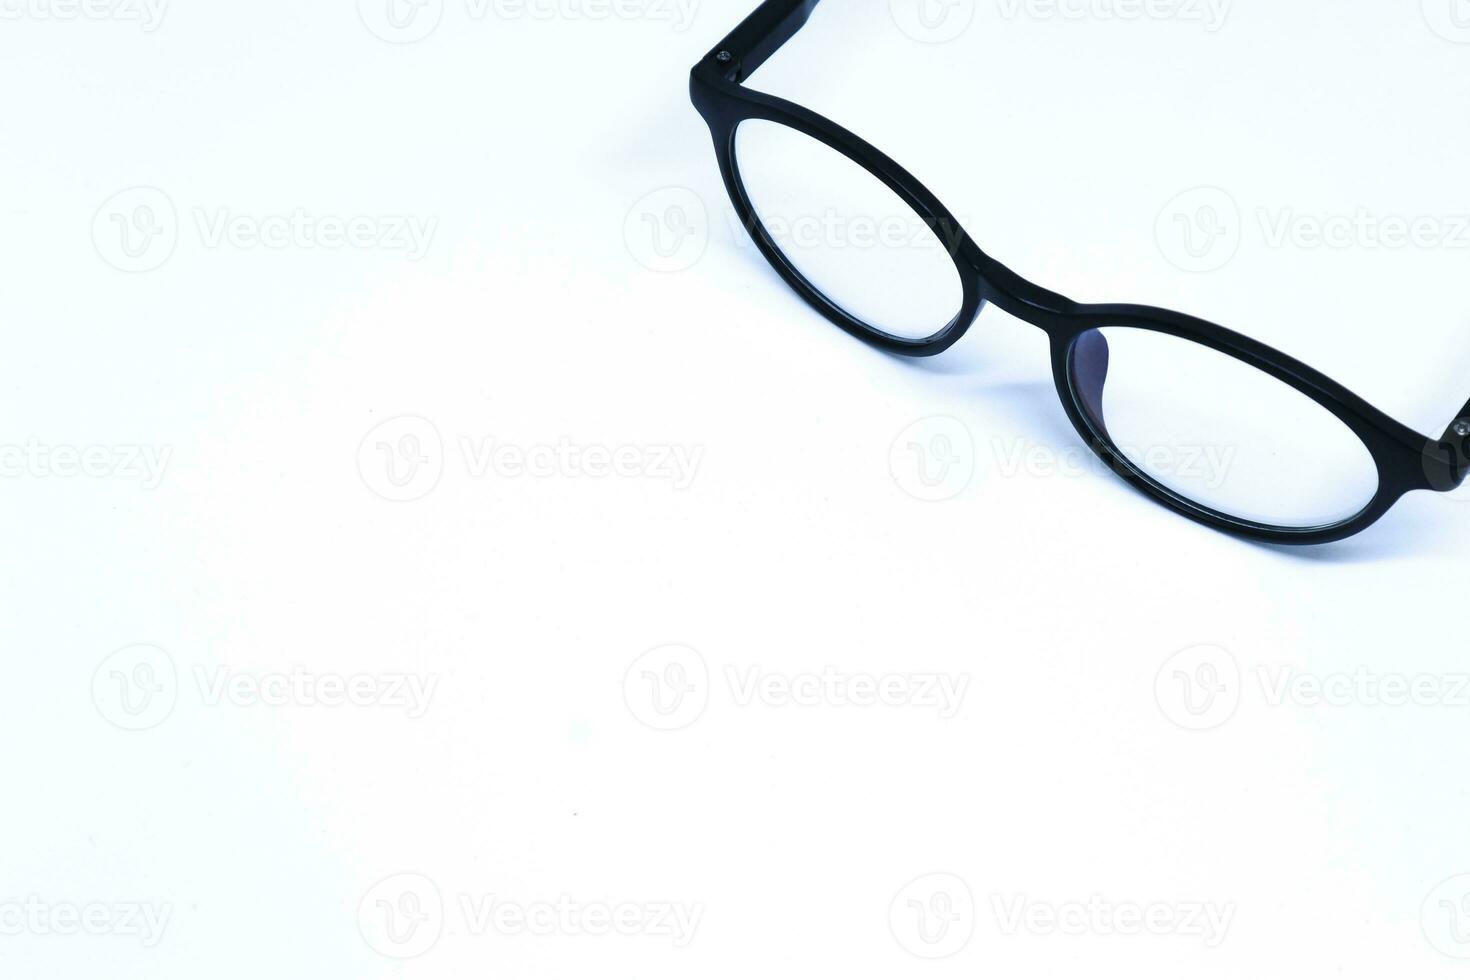 lunettes noires dans le coin d'un fond blanc minimaliste avec une photo oblique du haut, mode paysage